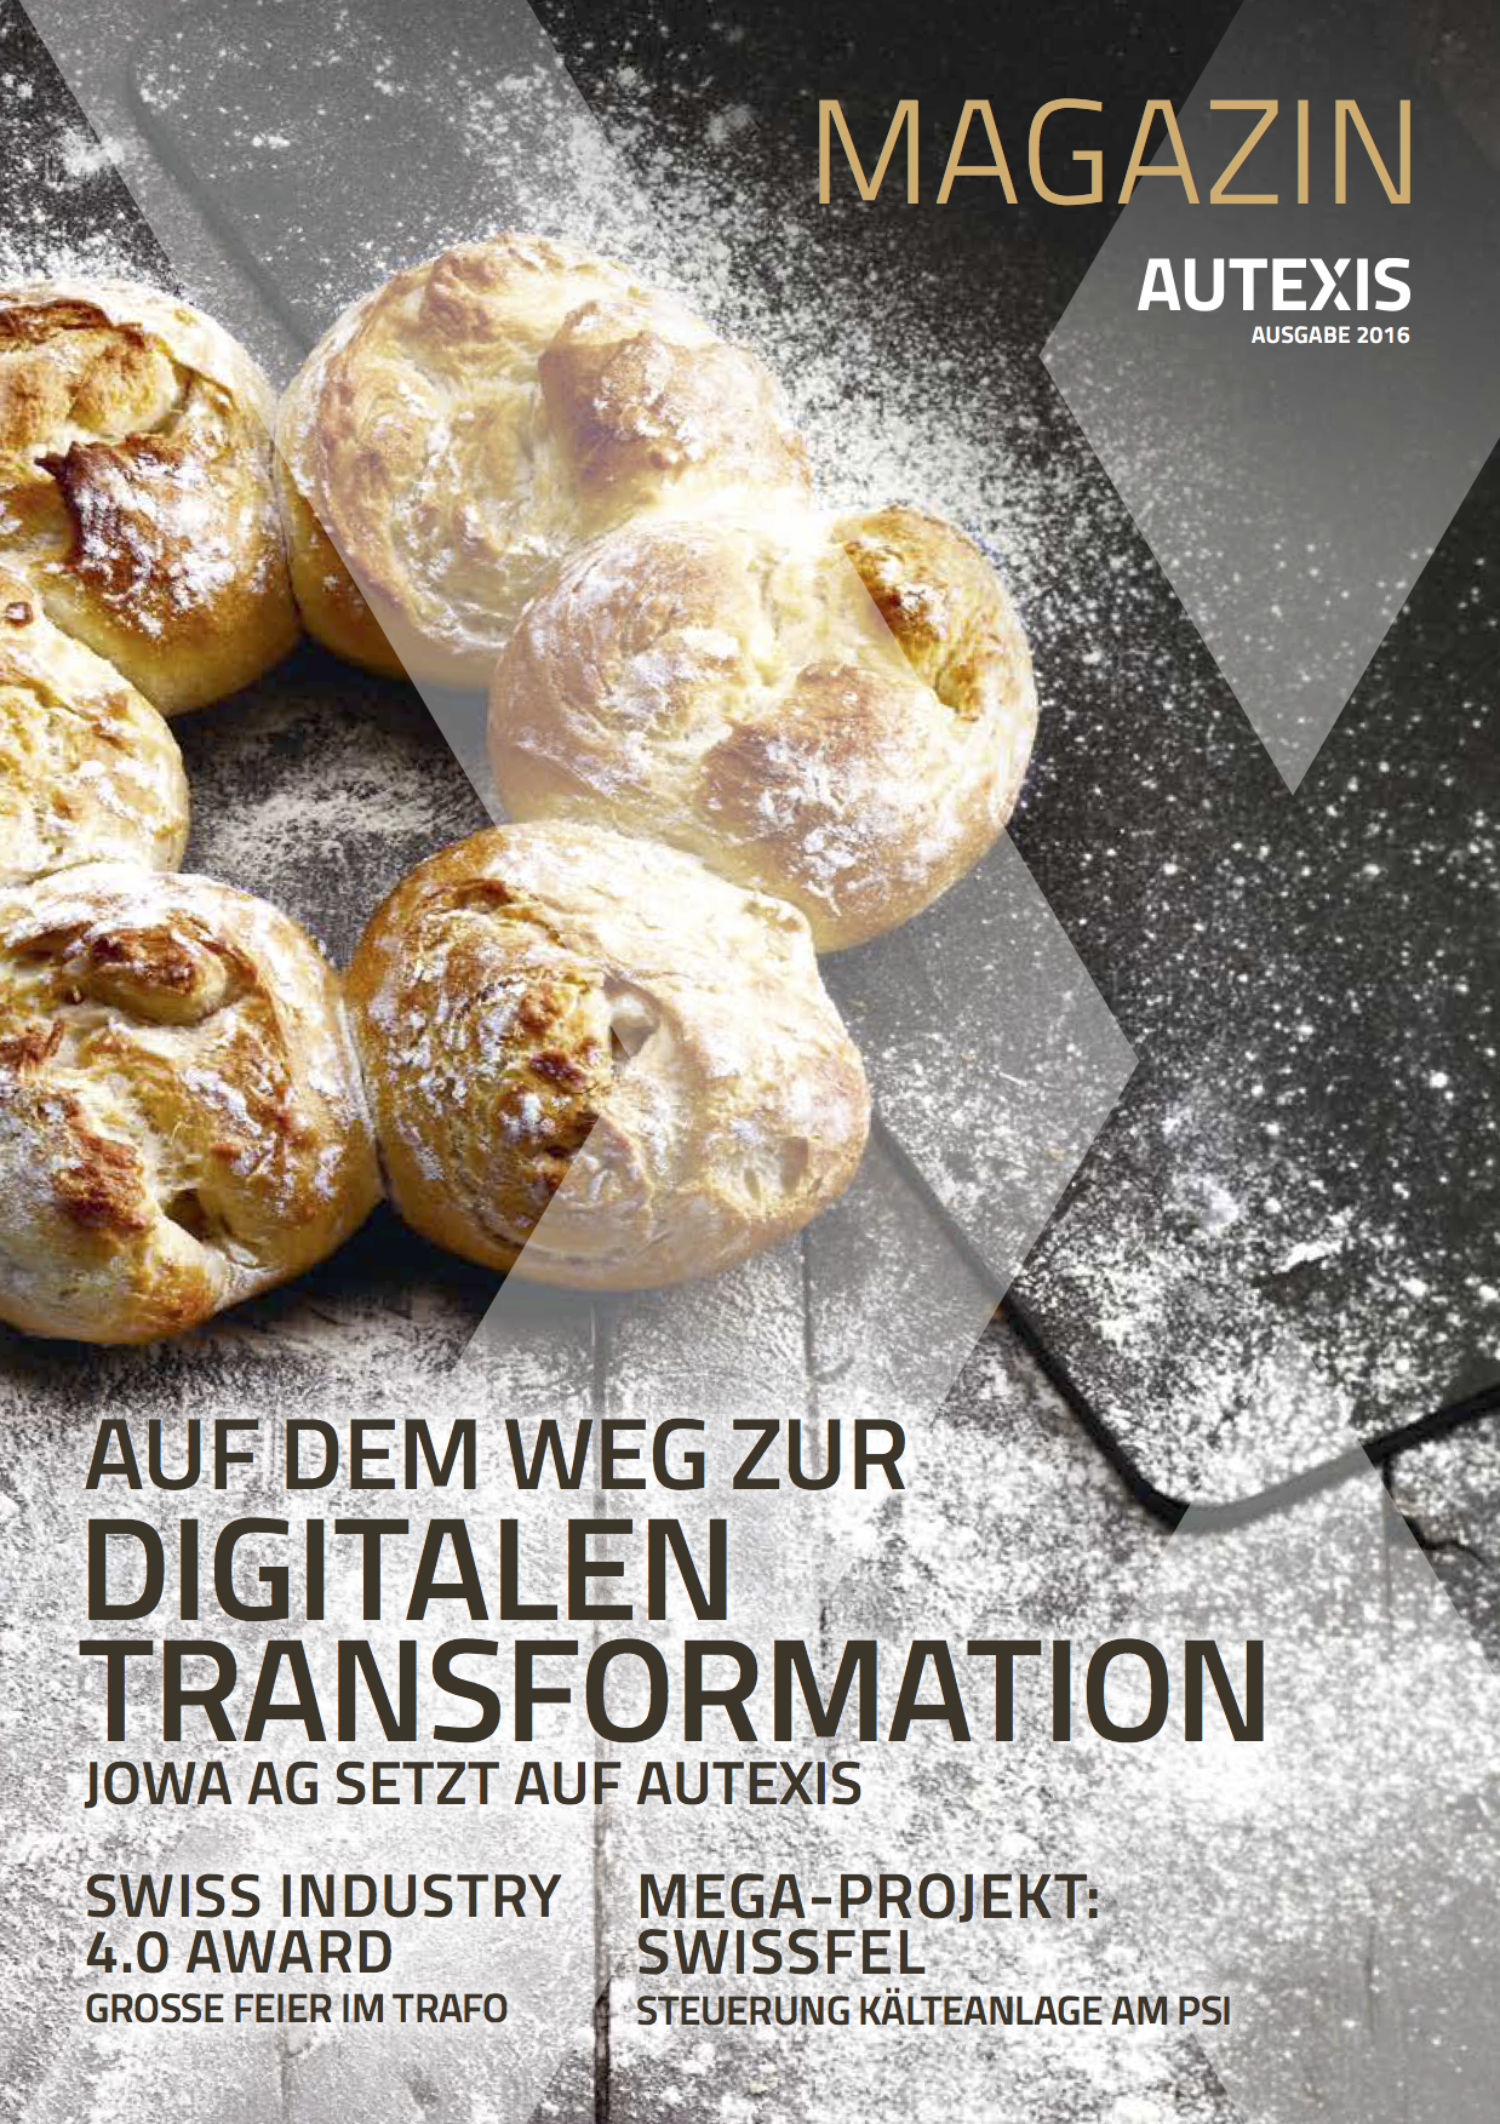 Das neue Autexis Kundenmagazin: AUF DEM WEG ZUR DIGITALEN TRANSFORMATION